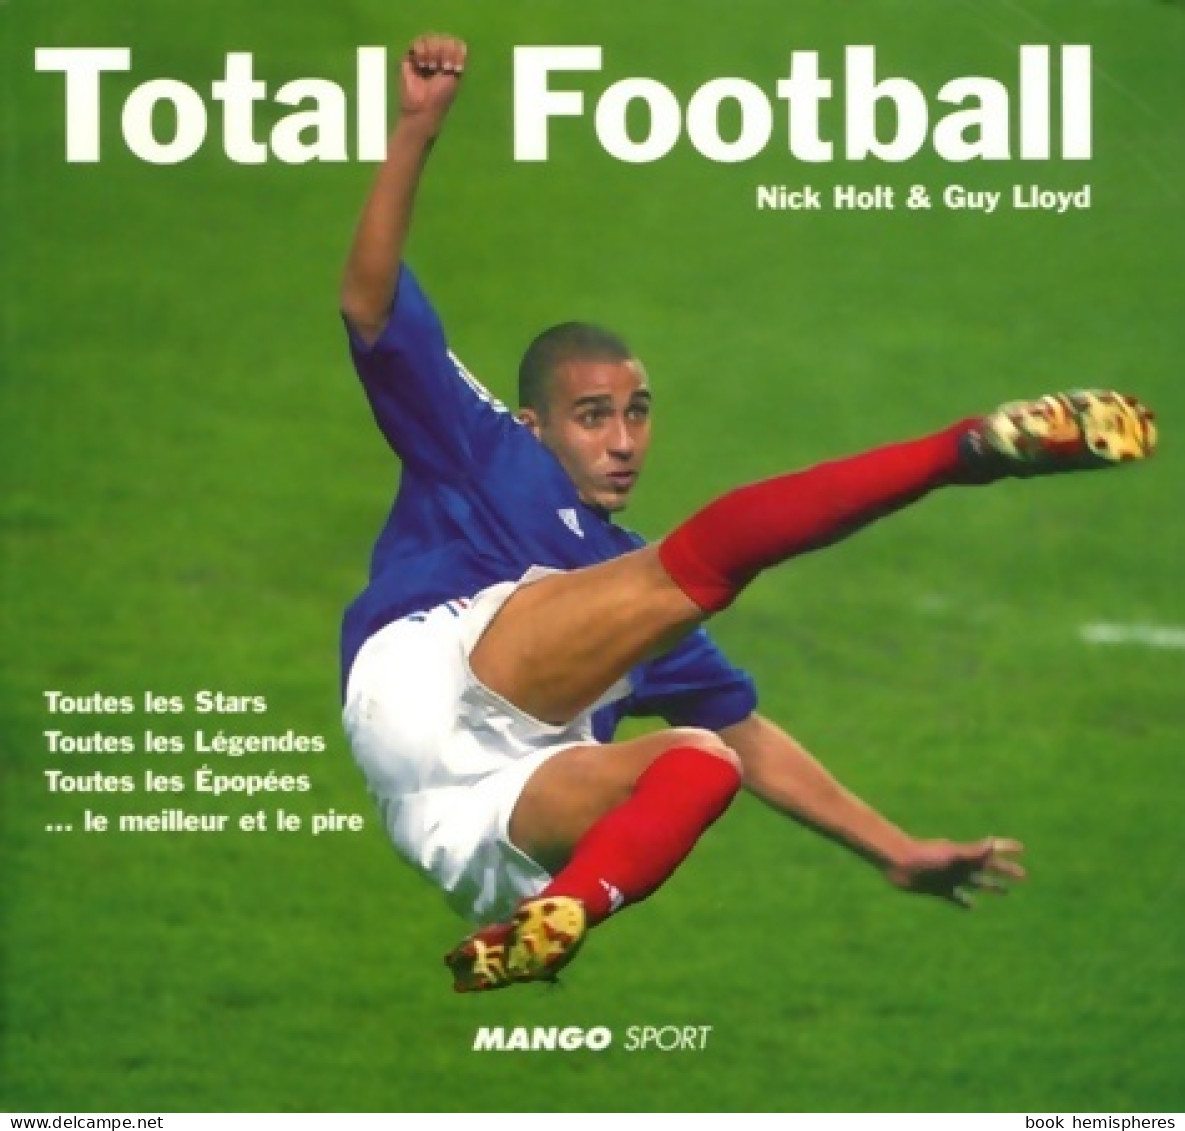 Total Football (2006) De Nick Holt - Sport